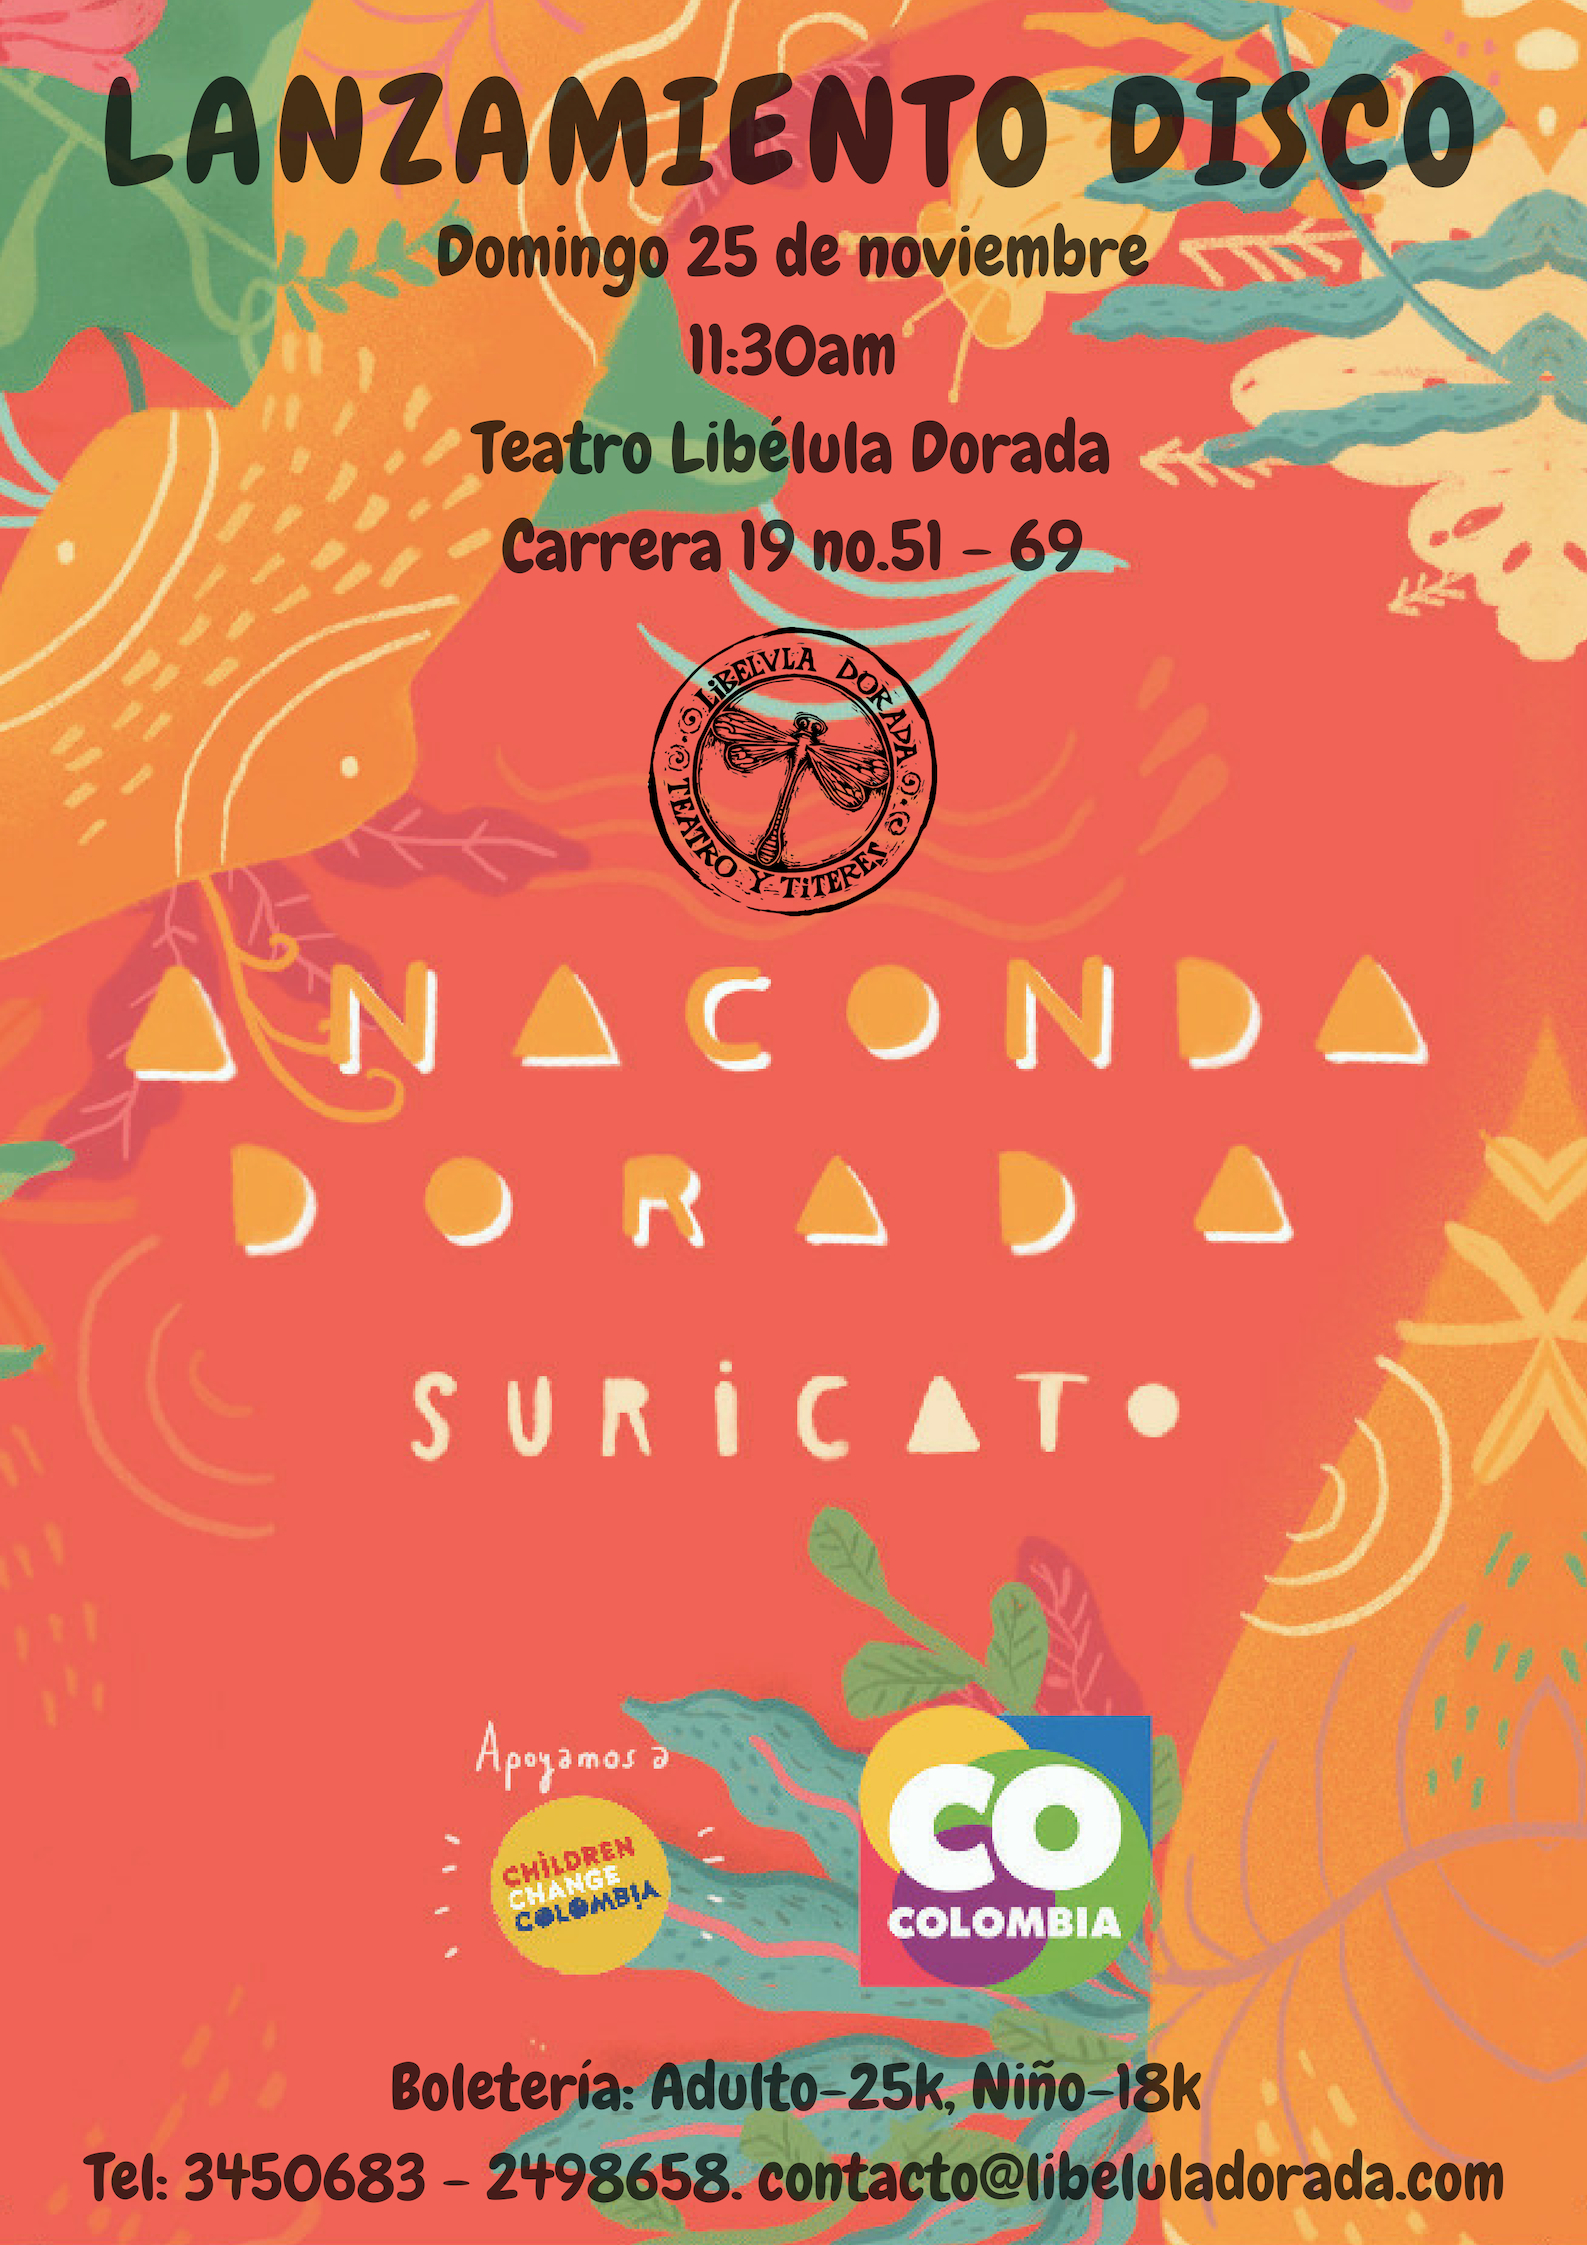 Lanzamiento del disco de la agrupación Suricato, titulado ANACONDA DORADA, que se realizará el domingo 25 de noviembre a las 11:30 a.m. en el Teatro la Libélula Dorada de Bogotá.